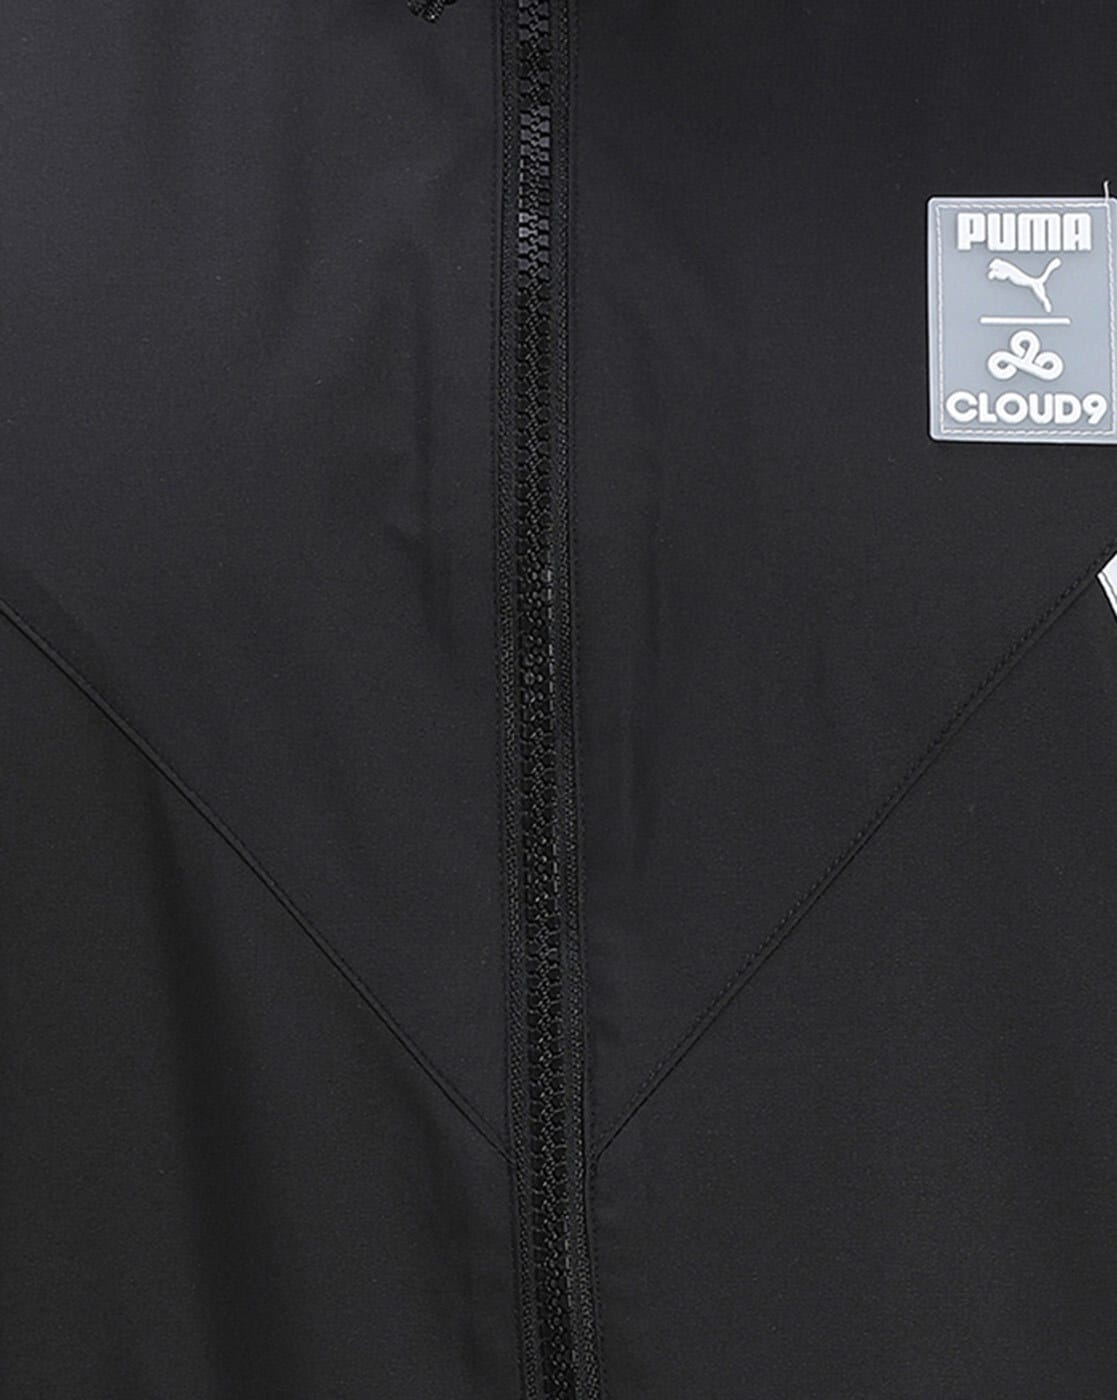 PUMA X Cloud9 Corrupted Windbreaker Jacket in Black for Men